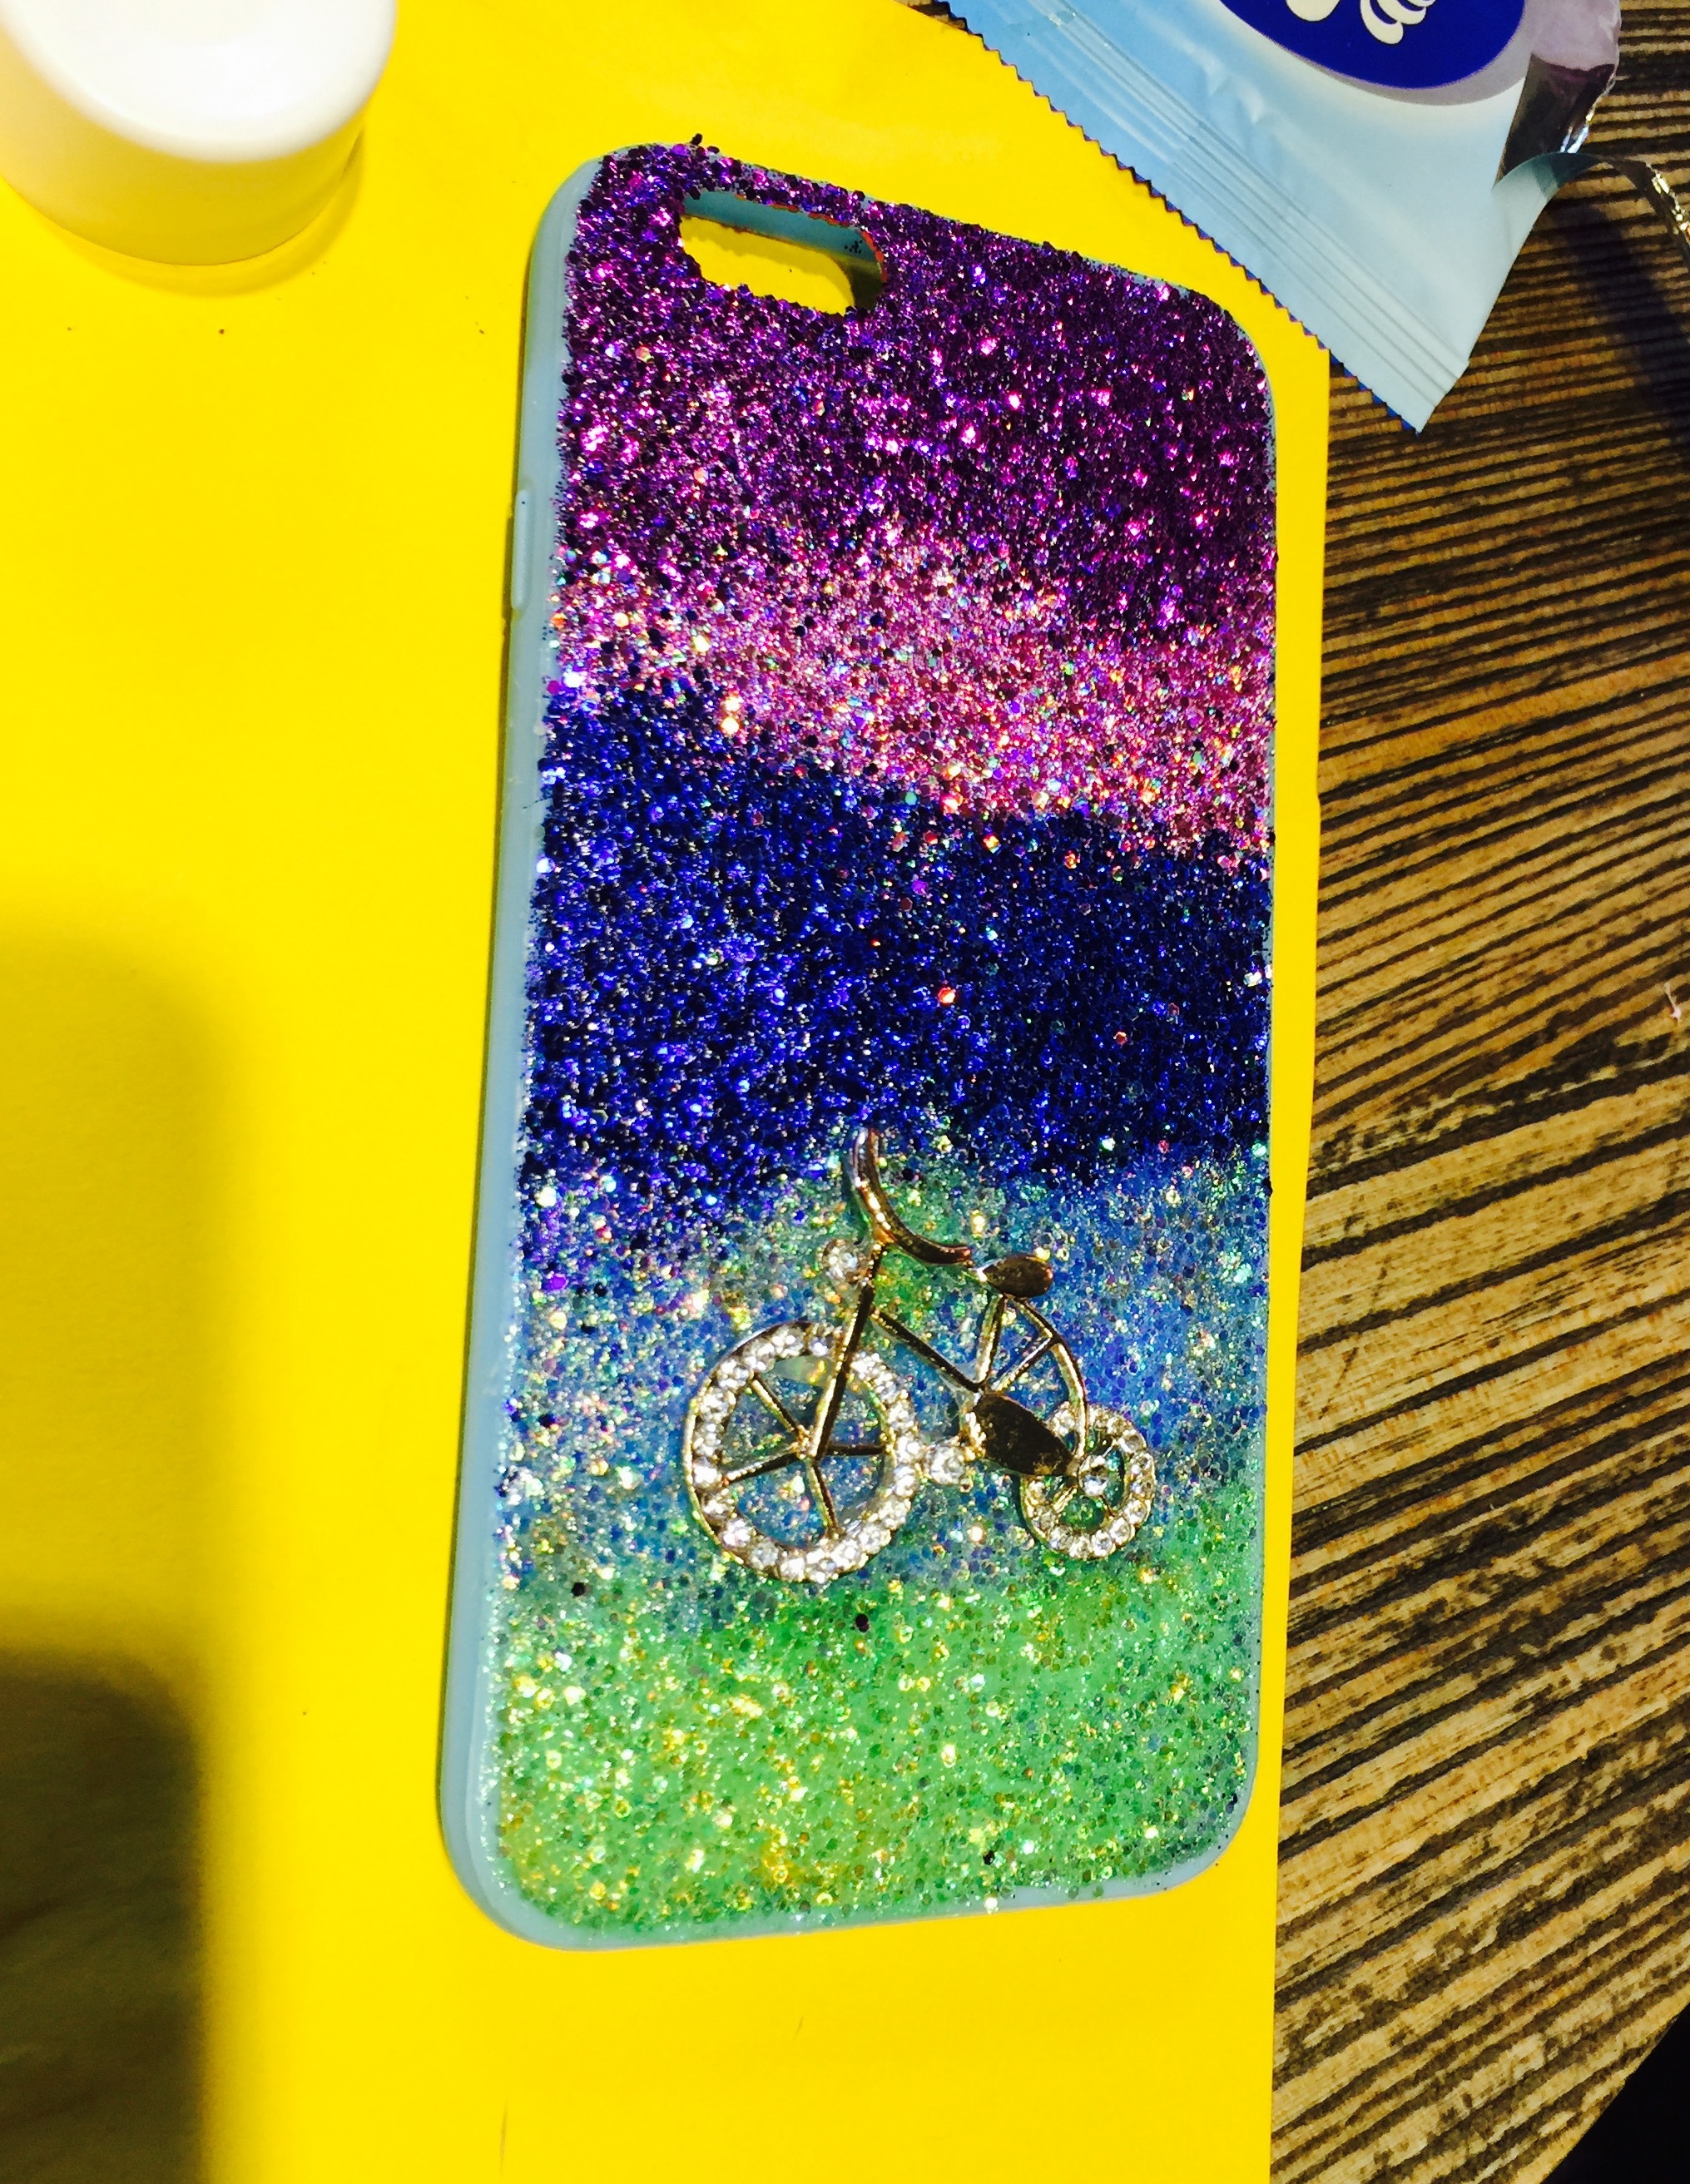 创意新款磨砂手机壳 彩色手机壳素材糖果色磨砂手机壳tpu手机套-阿里巴巴